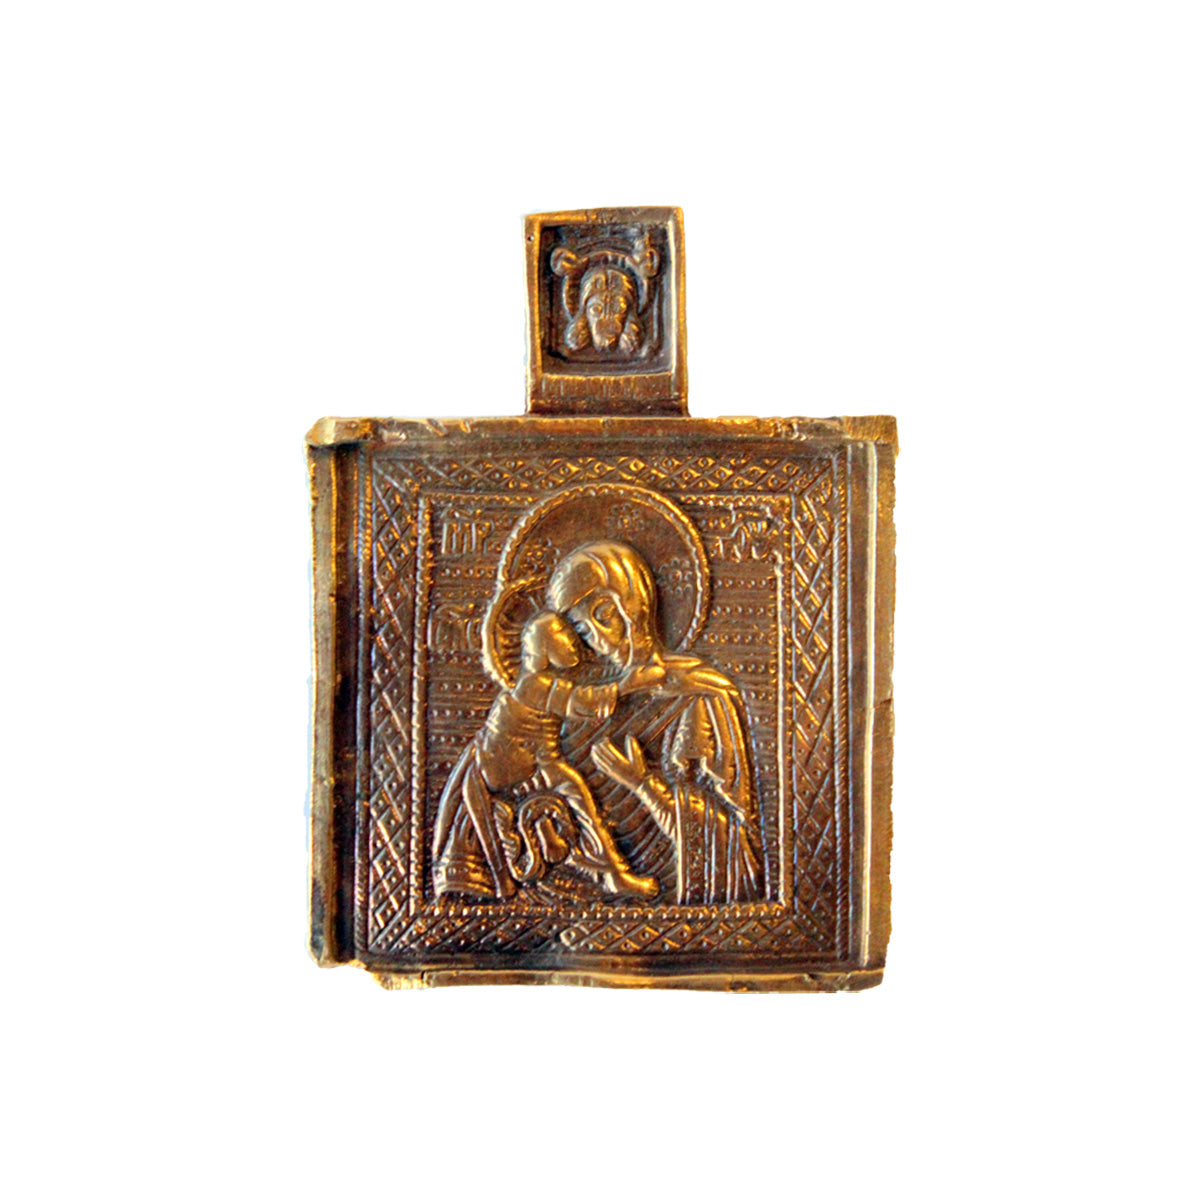 Lille russisk ikon fra ca. 1800 et såkaldt gudsmoderikon